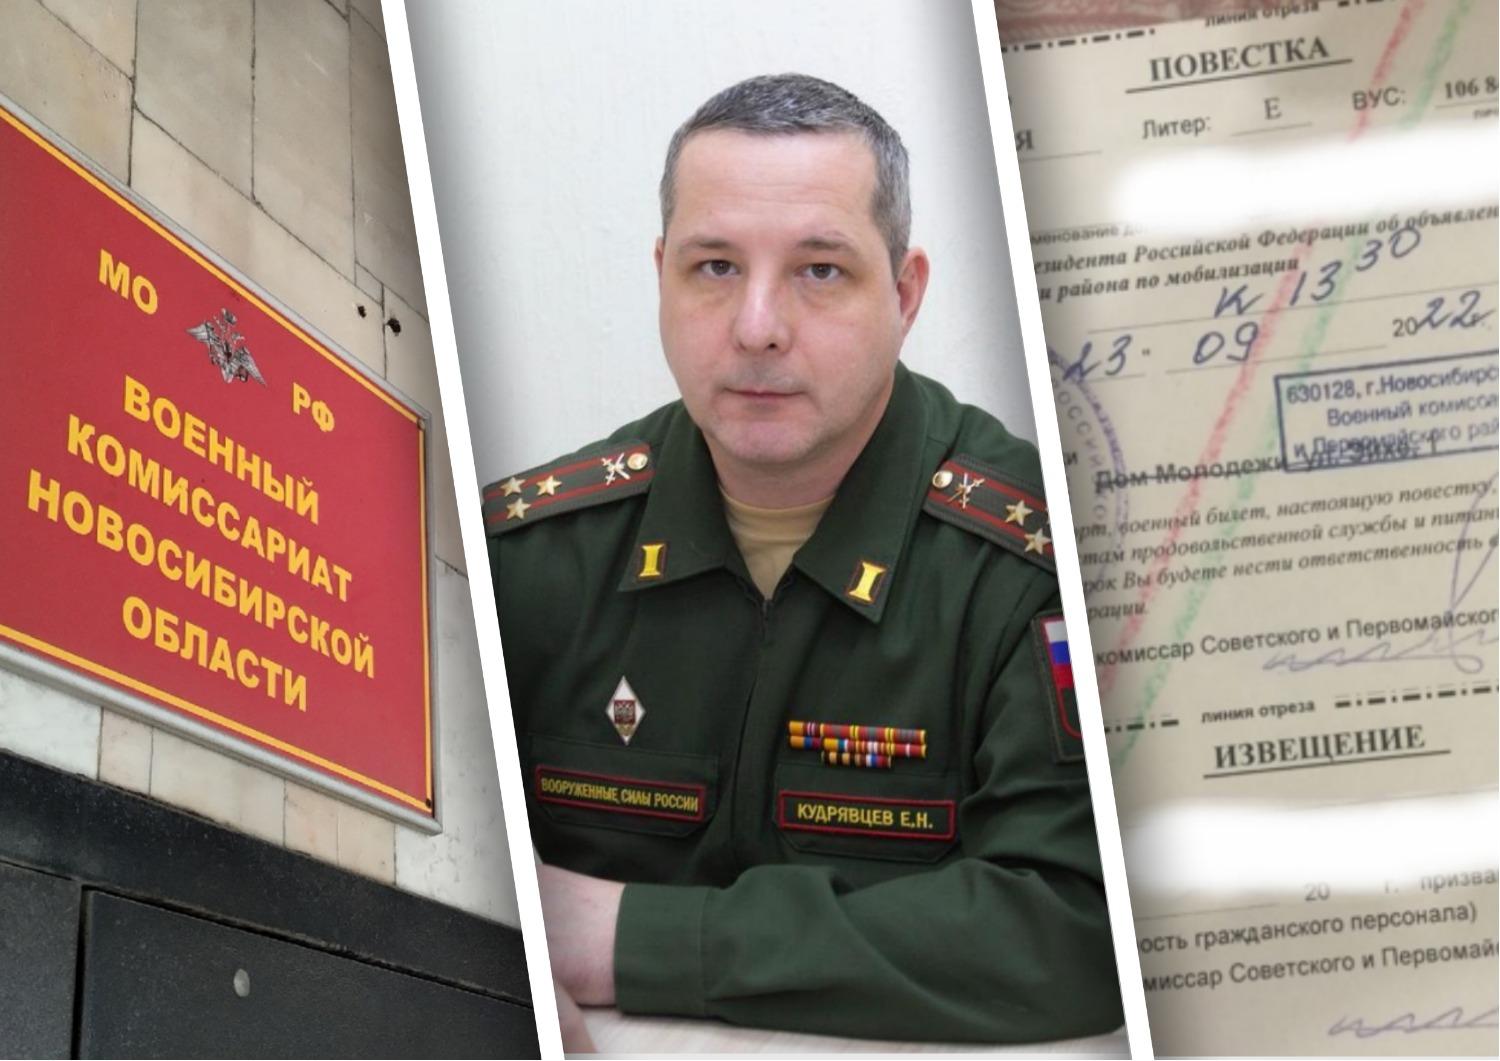 Военный комиссар Новосибирской области Кудрявцев